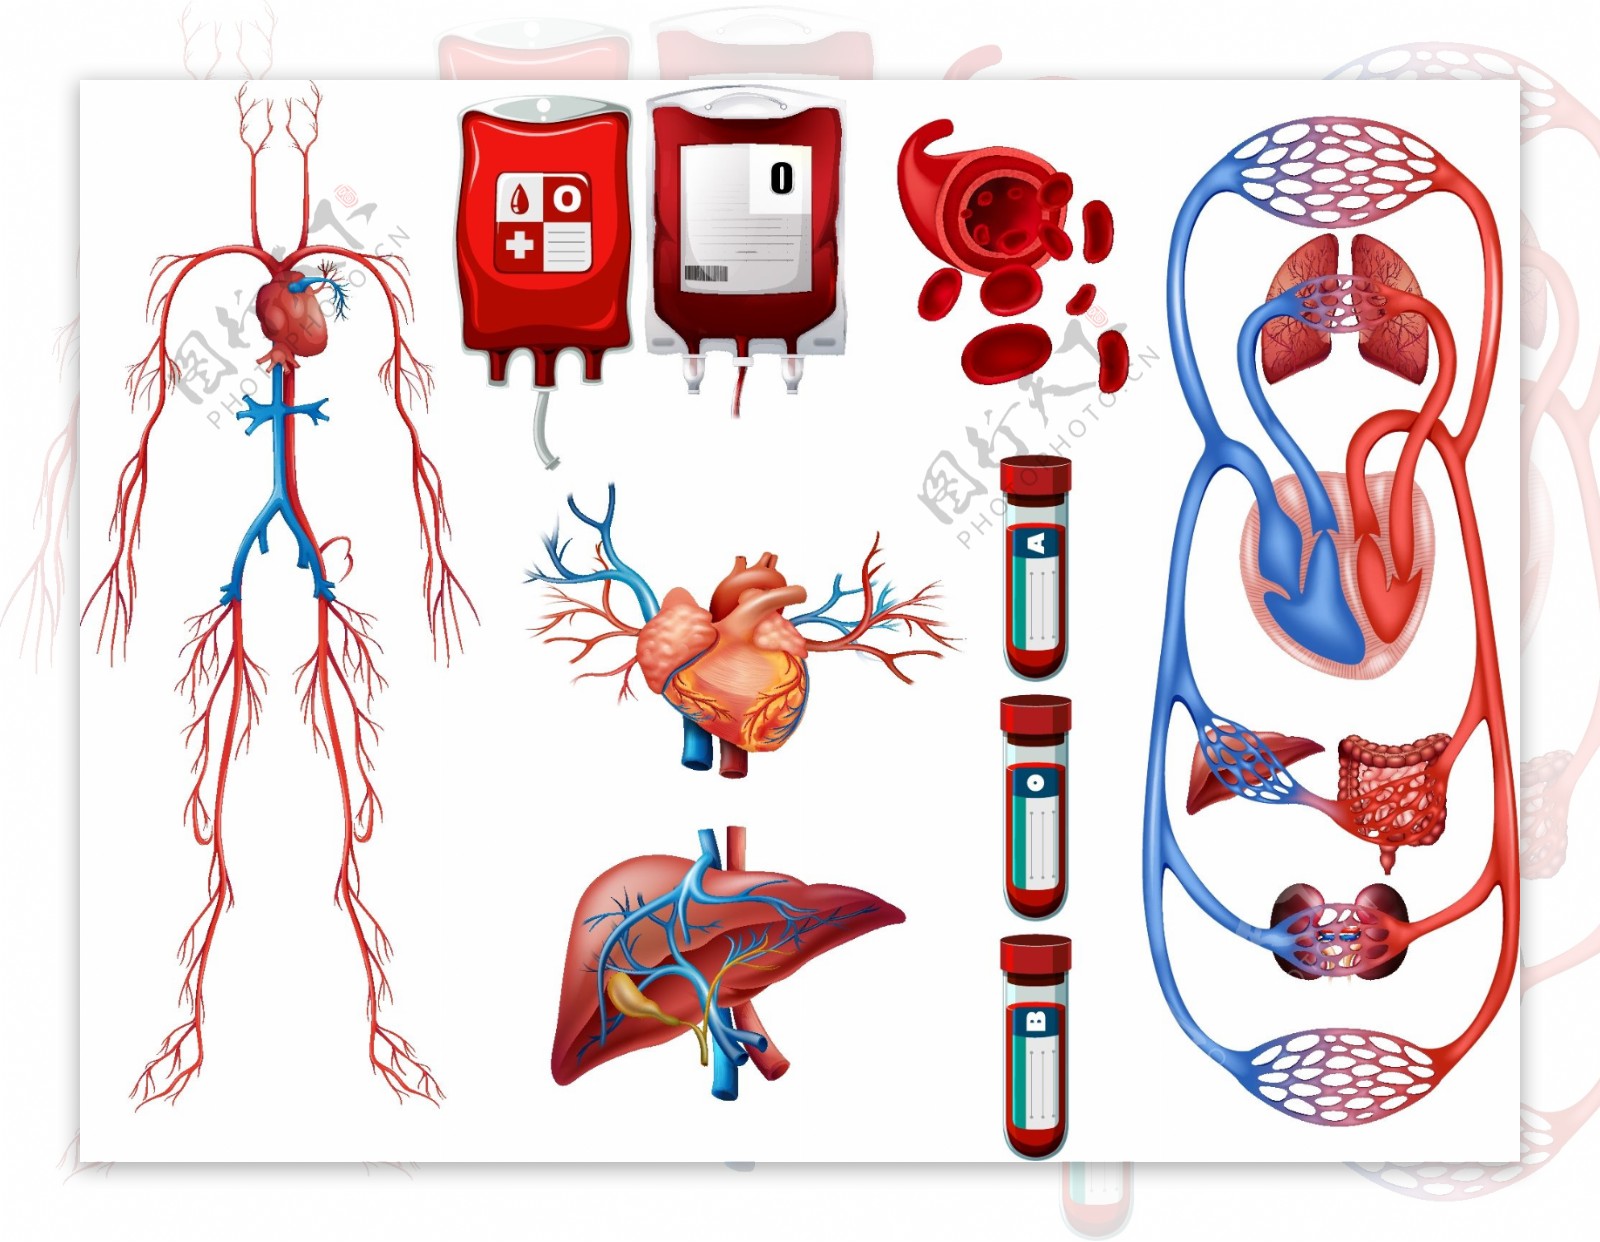 血液类型和呼吸系统插图